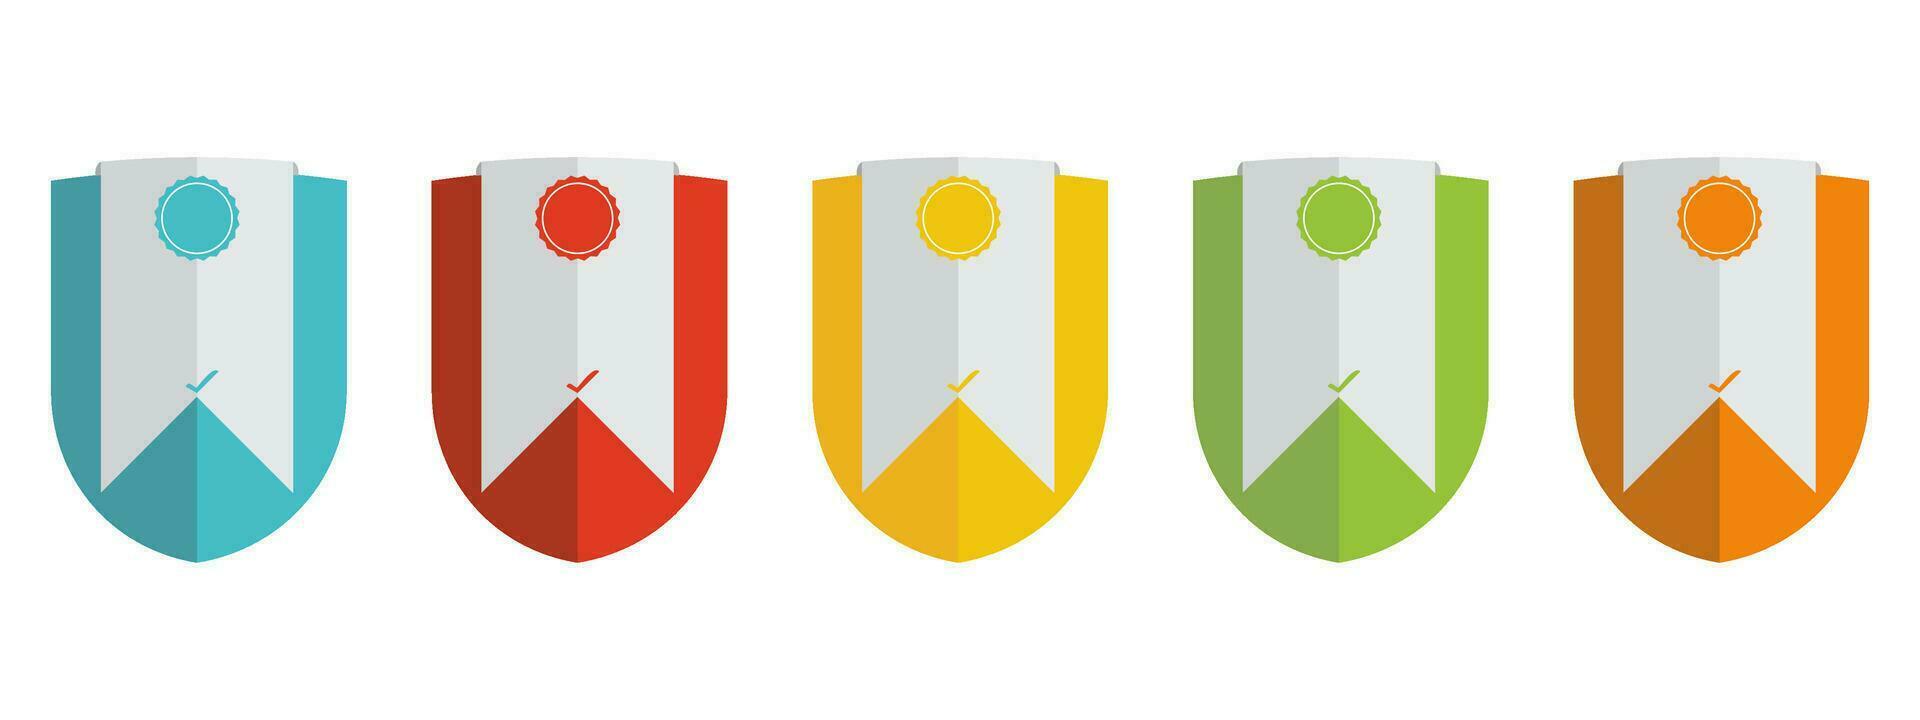 bedrijf insigne certificaten vector illustratie gecertificeerd logo ontwerp.